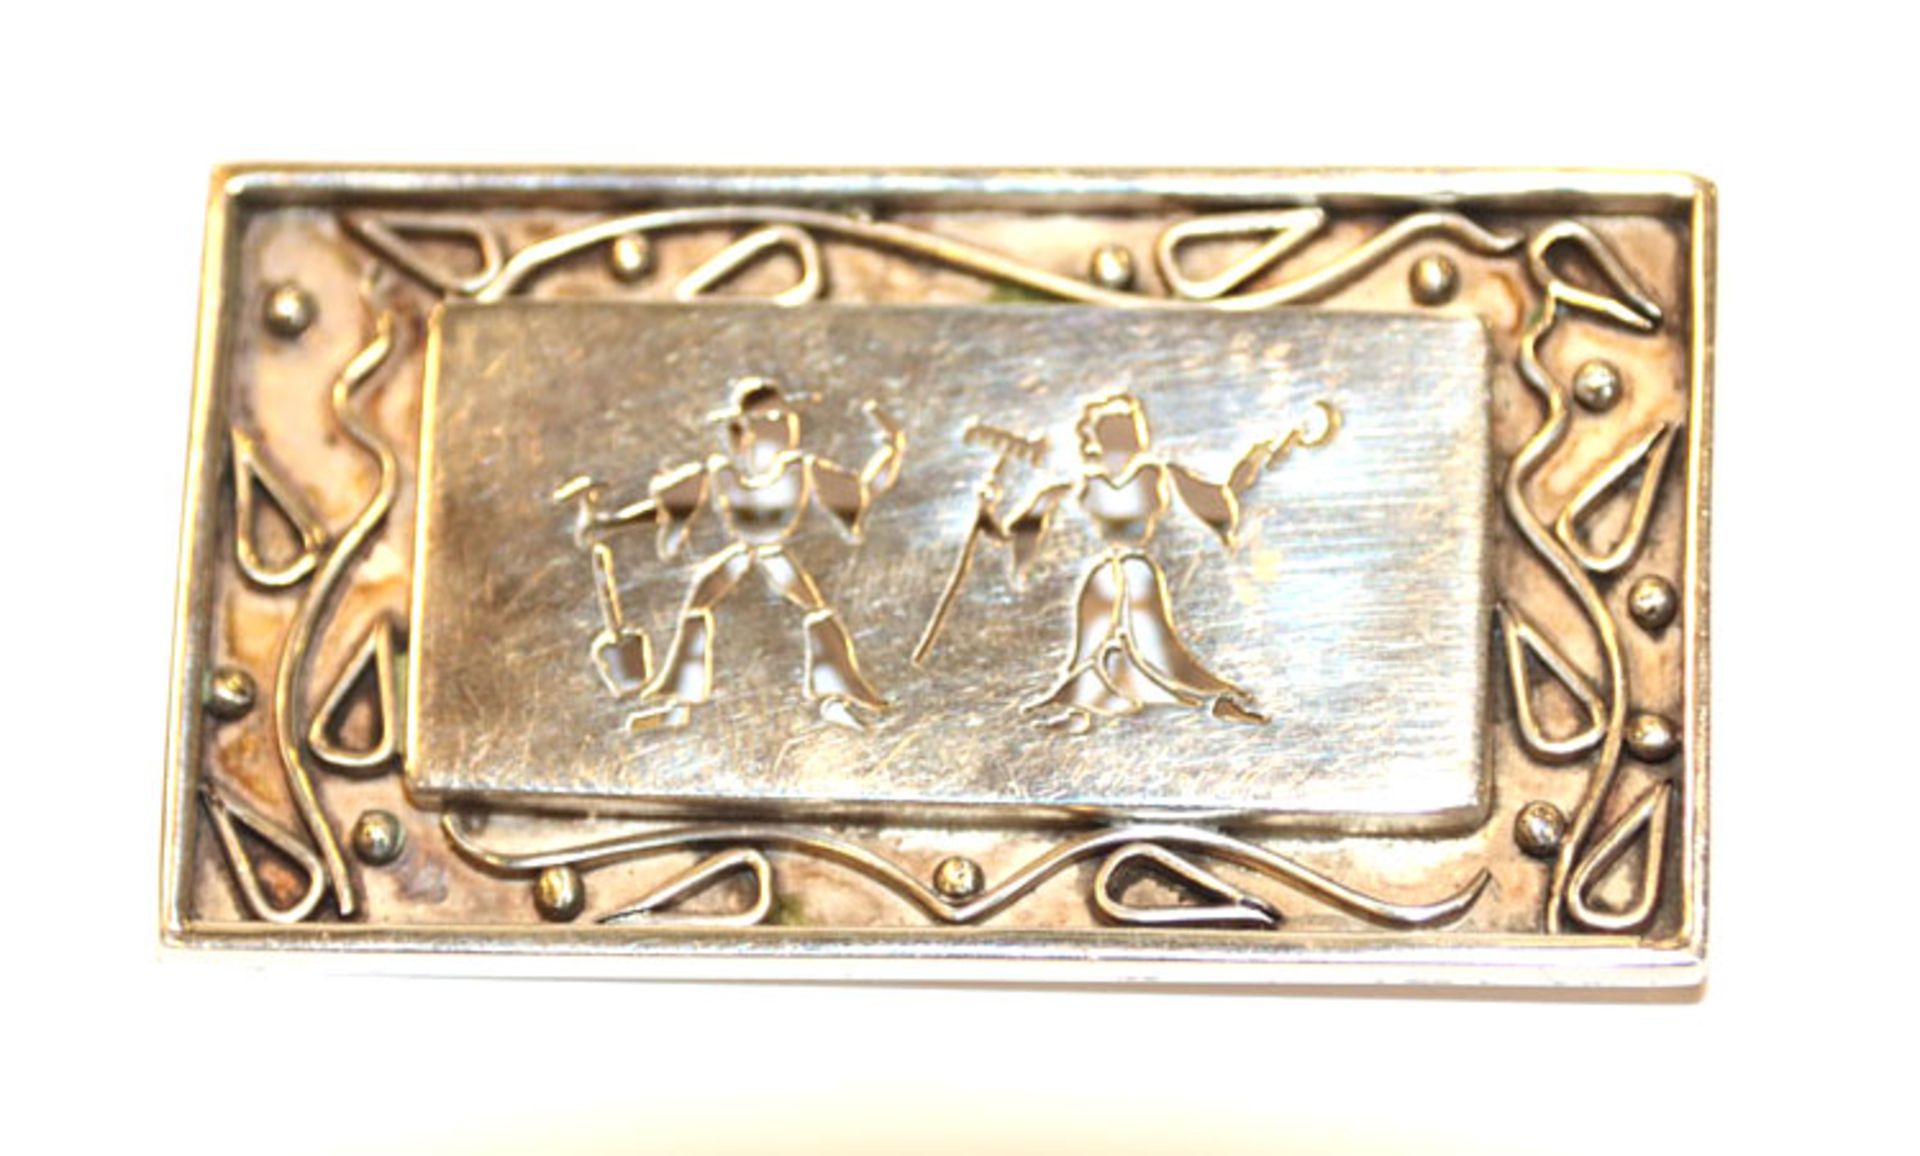 900 Silber Brosche mit Bauernpaar-Darstellung, signiert Sack, B 5,5 cm, H 3,2 cm, 21 gr.